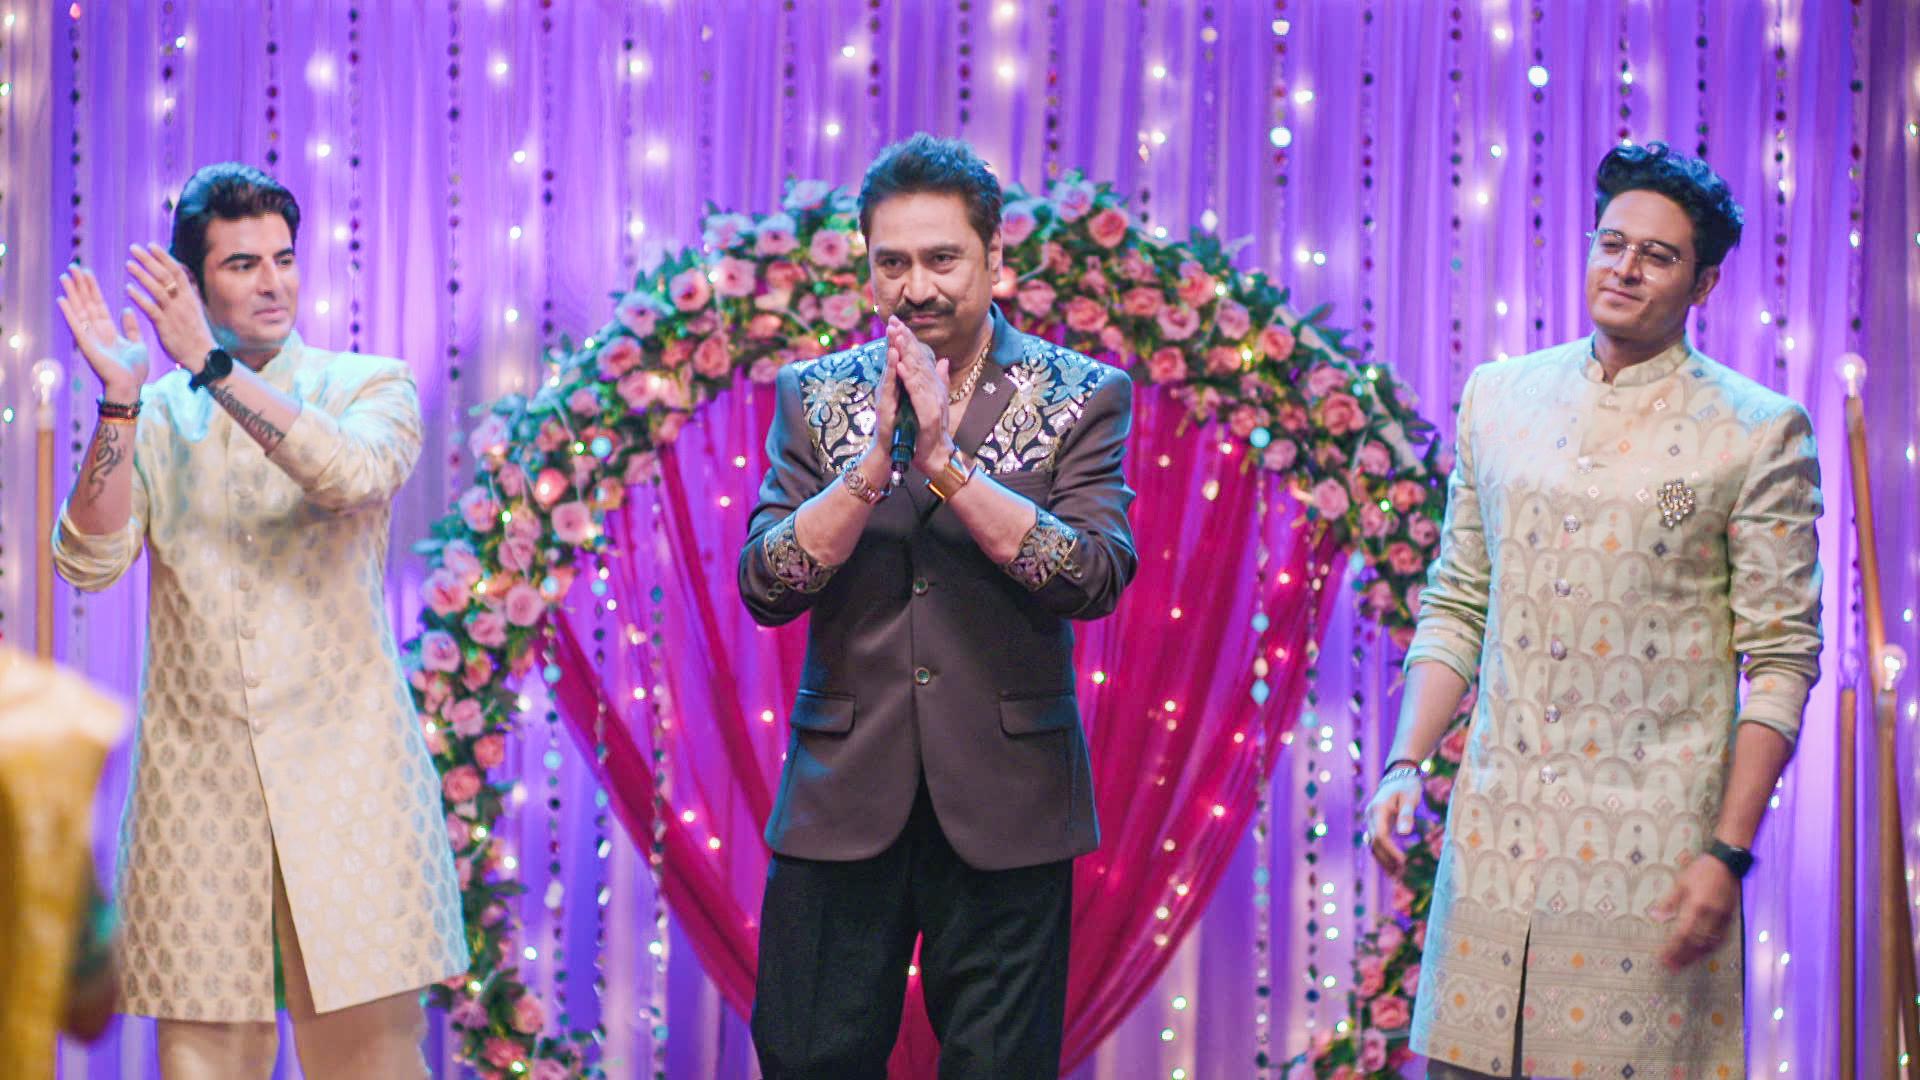 Kumar Sanu Attends the Wedding